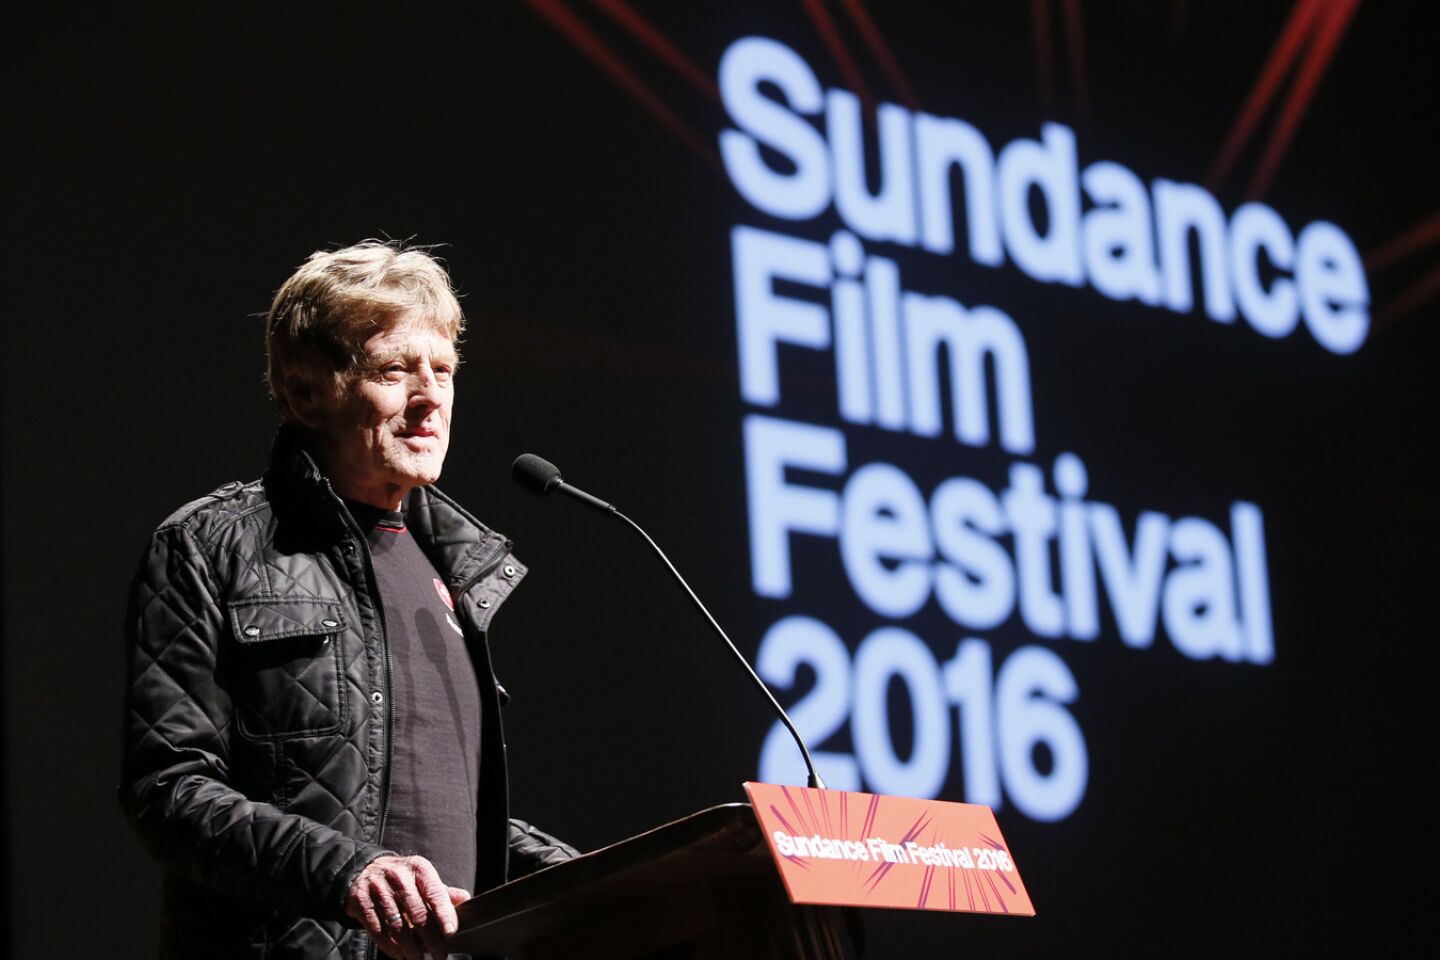 Sundance Film Festival 2016